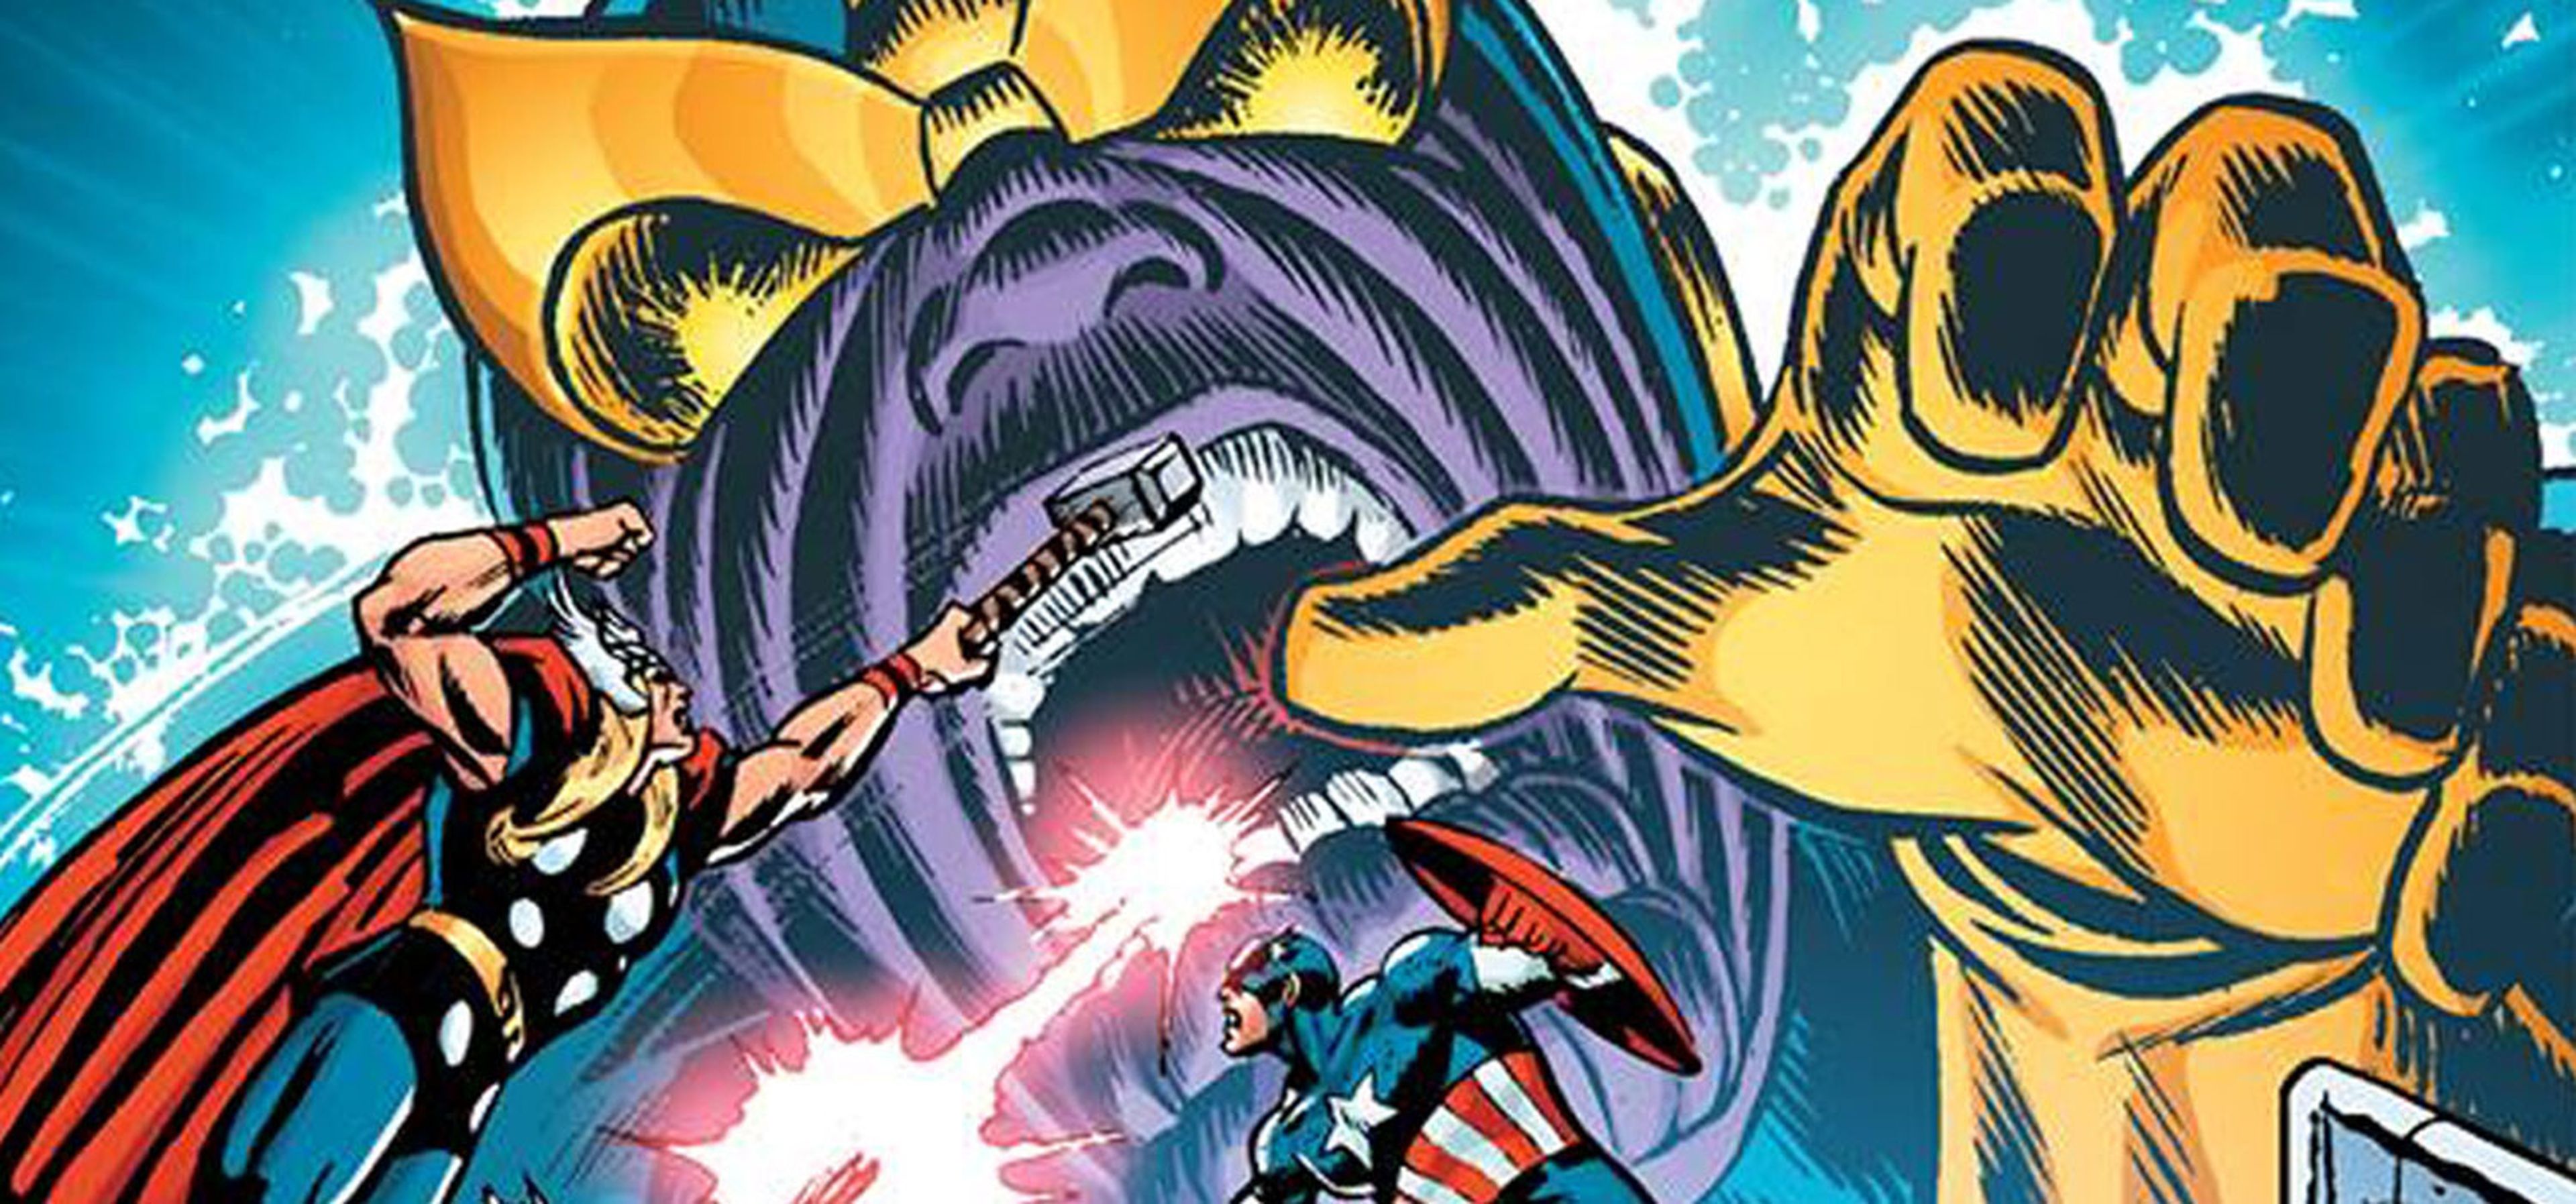 Reseña de La saga de Thanos, el origen del gran villano de Marvel